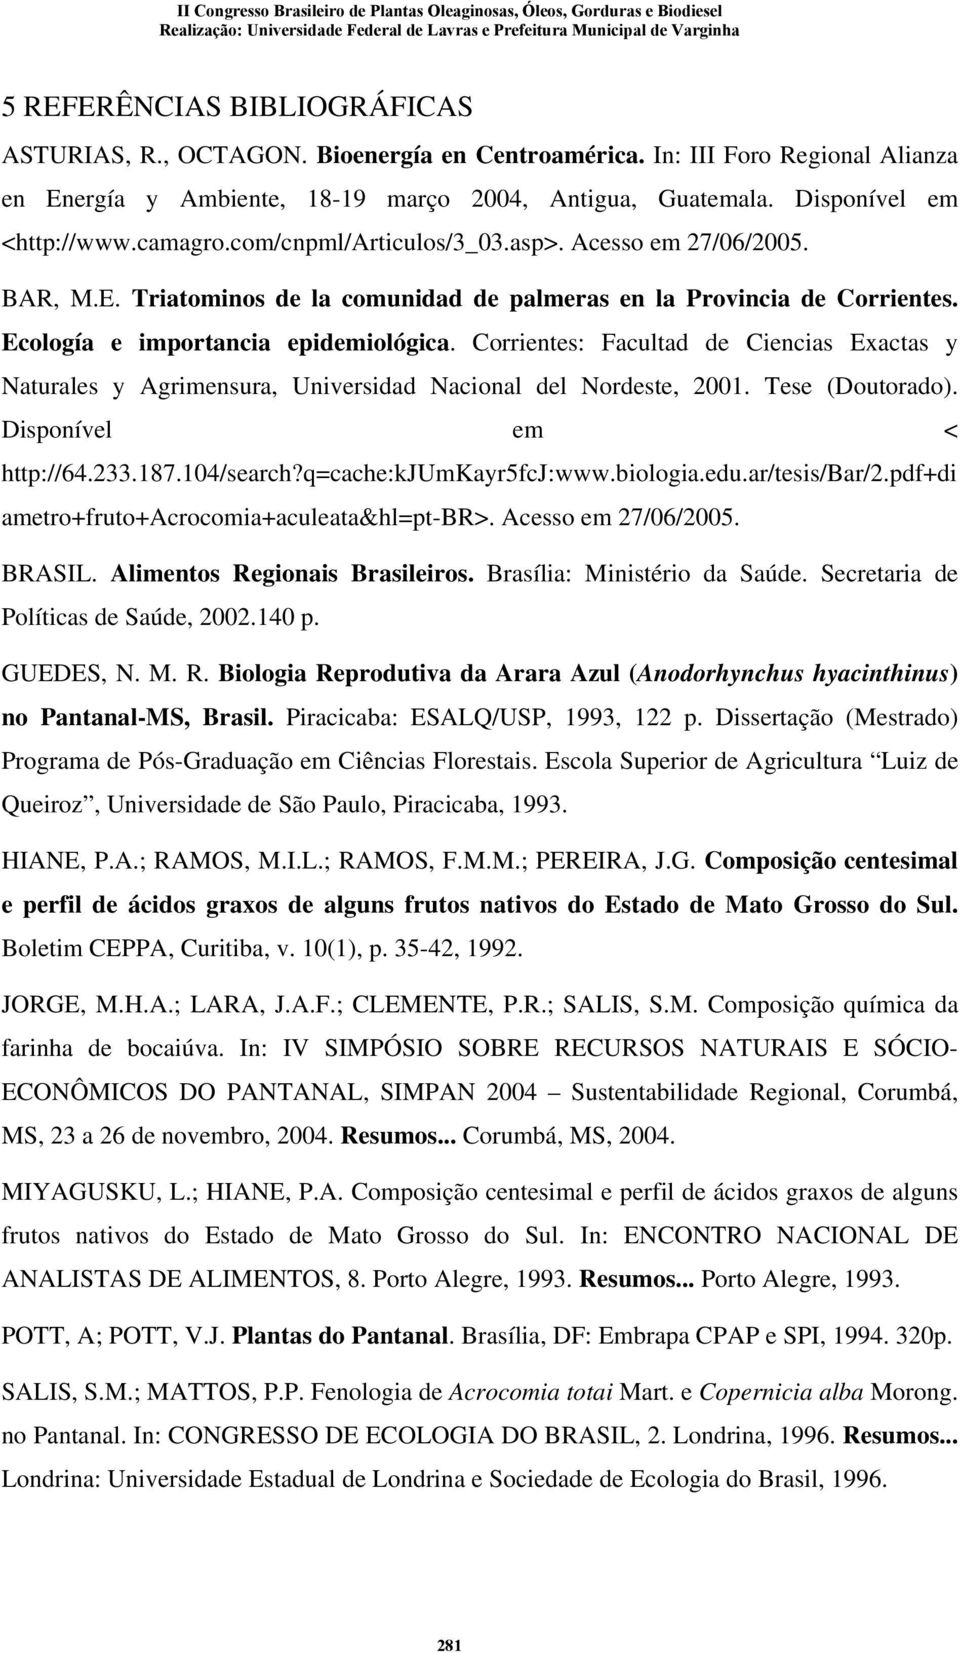 Corrientes: Facultad de Ciencias Exactas y Naturales y Agrimensura, Universidad Nacional del Nordeste, 2001. Tese (Doutorado). Disponível em < http://64.233.187.104/search?q=cache:kjumkayr5fcj:www.